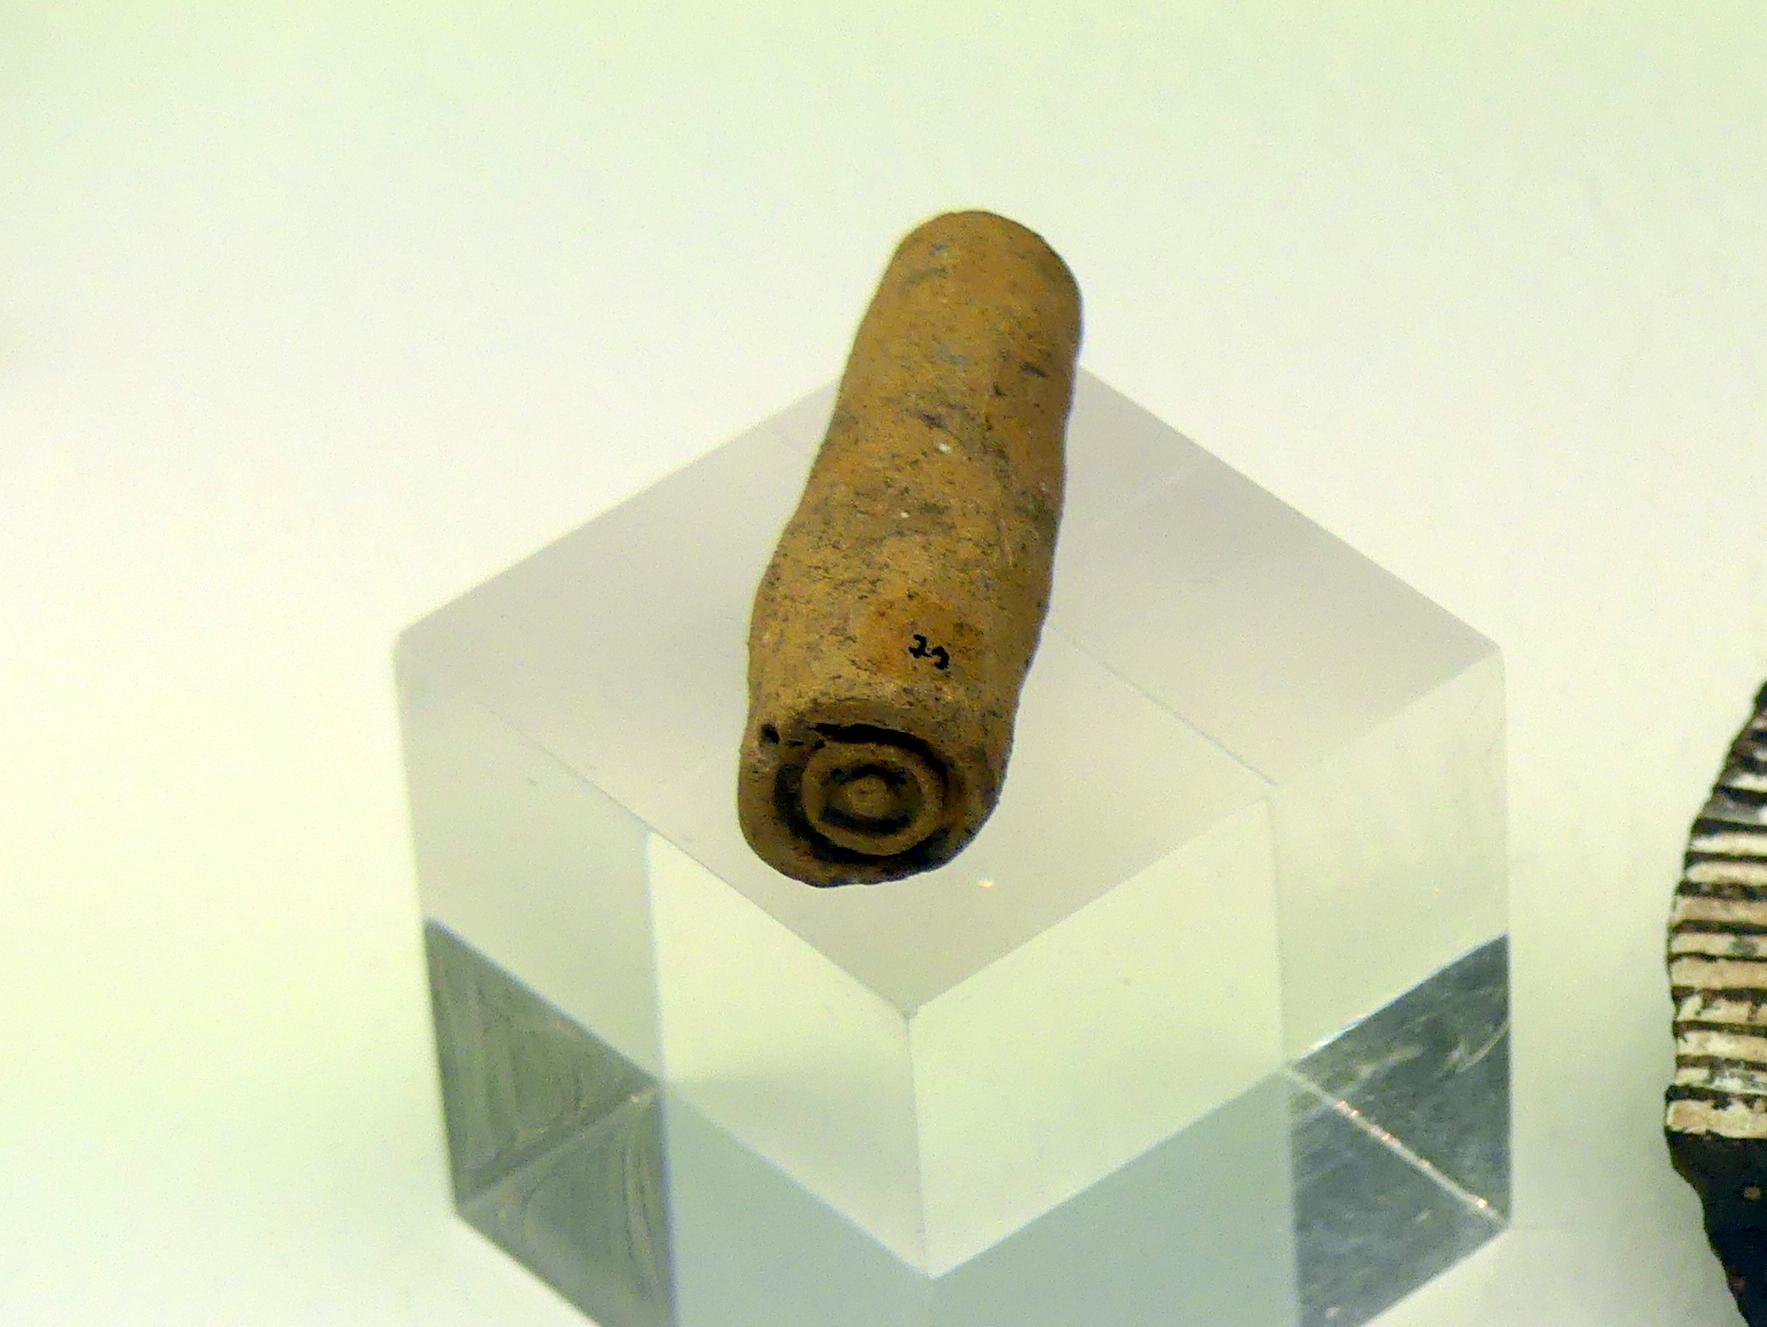 Tonstempel zum Herstellen von Verzierungen, Hallstattzeit, 700 - 200 v. Chr.